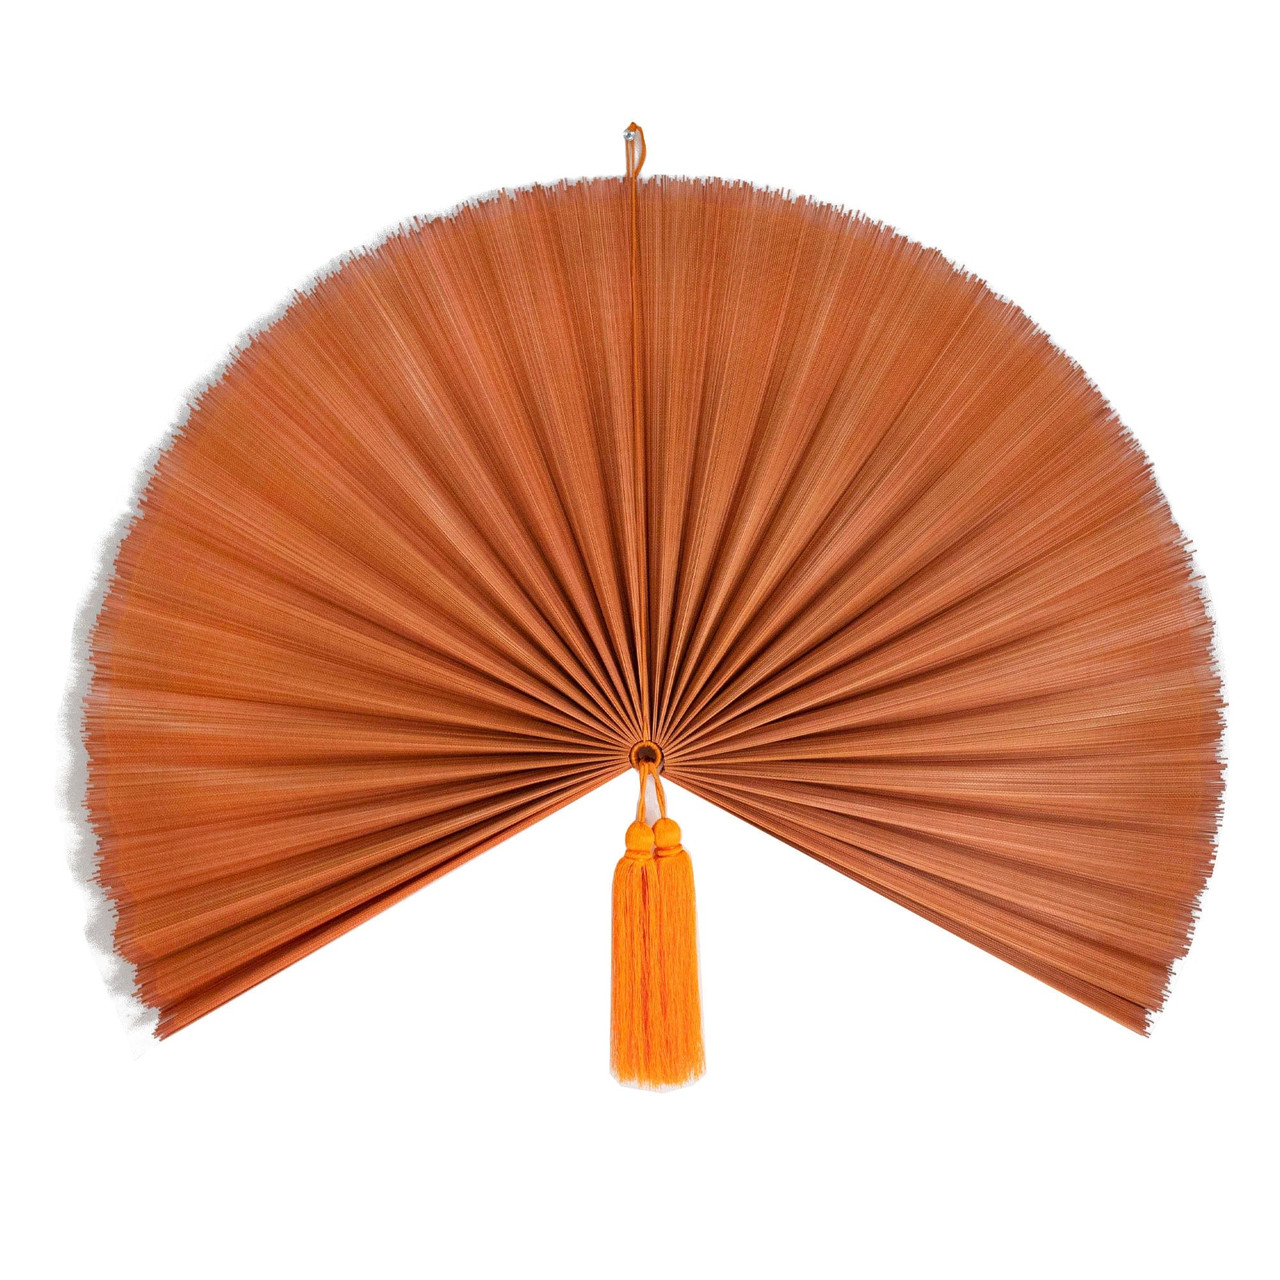 gjorde det I modsætning til Bedøvelsesmiddel Extra-Large Folding Wall Hanging Fan For Home Decoration (Orange) -  EventsWholesale.com